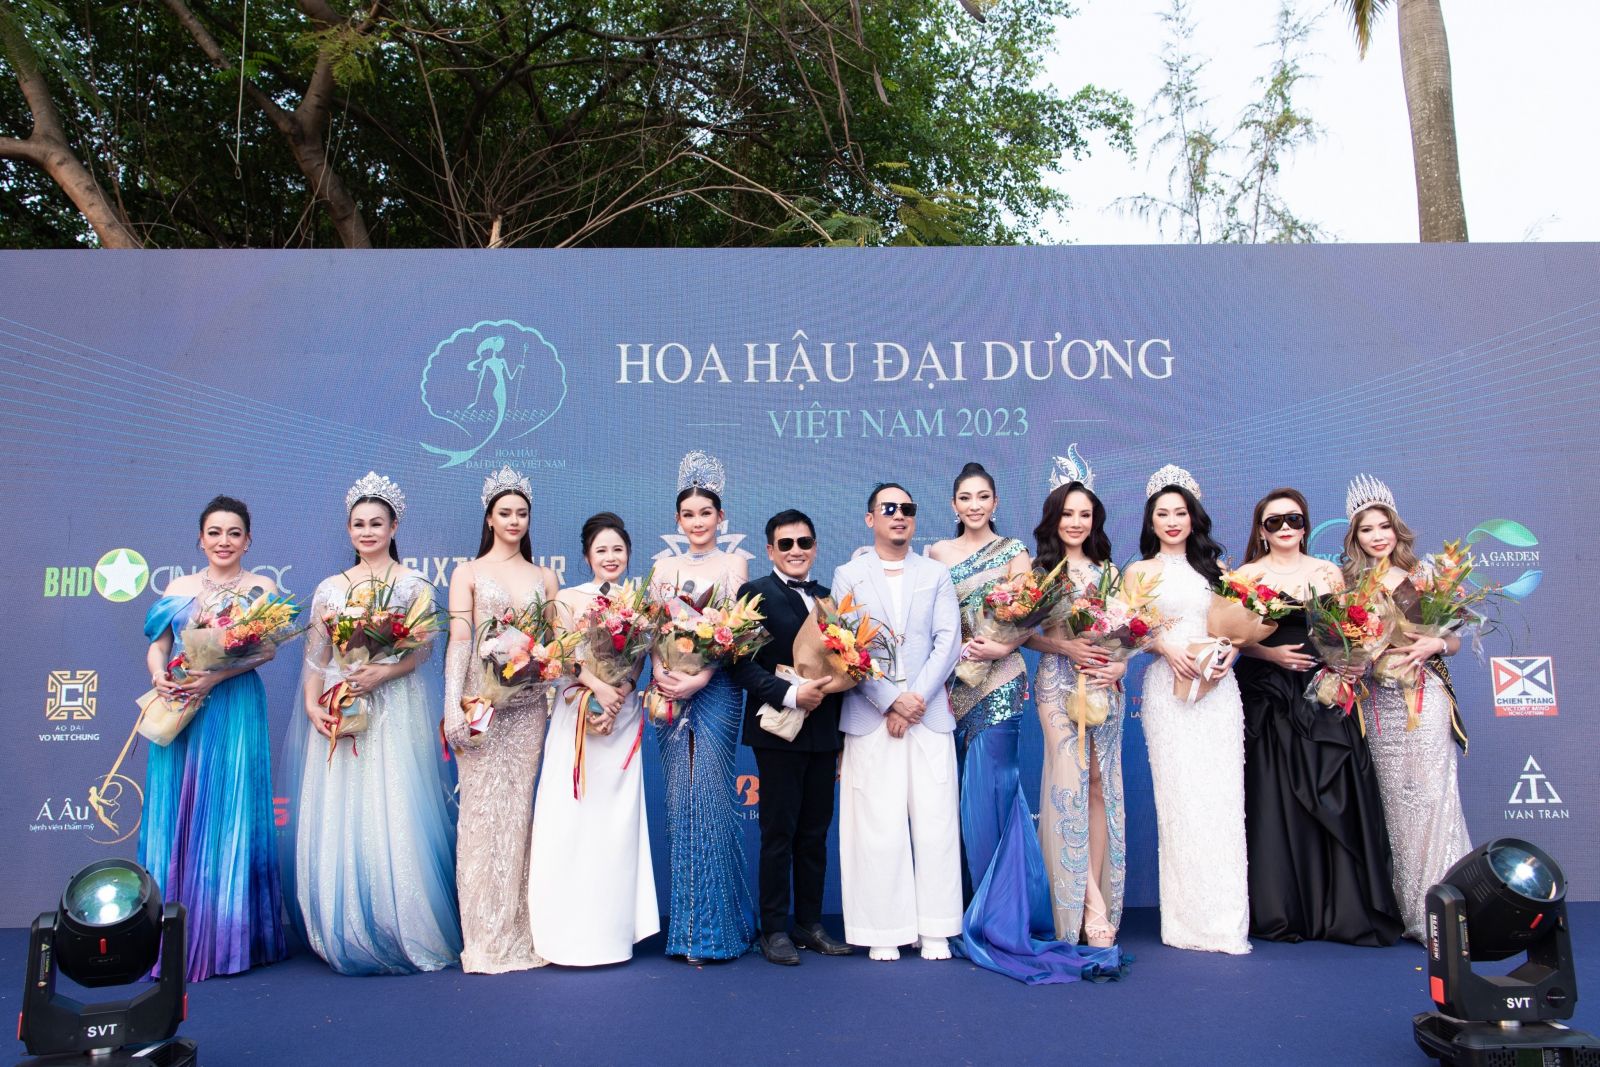 Bà Nguyễn Thị Ngọc Anh – CEO & Founder beGems (đầm trắng thứ 4 từ trái sang) cùng Ban giám khảo cuộc thi và các người đẹp